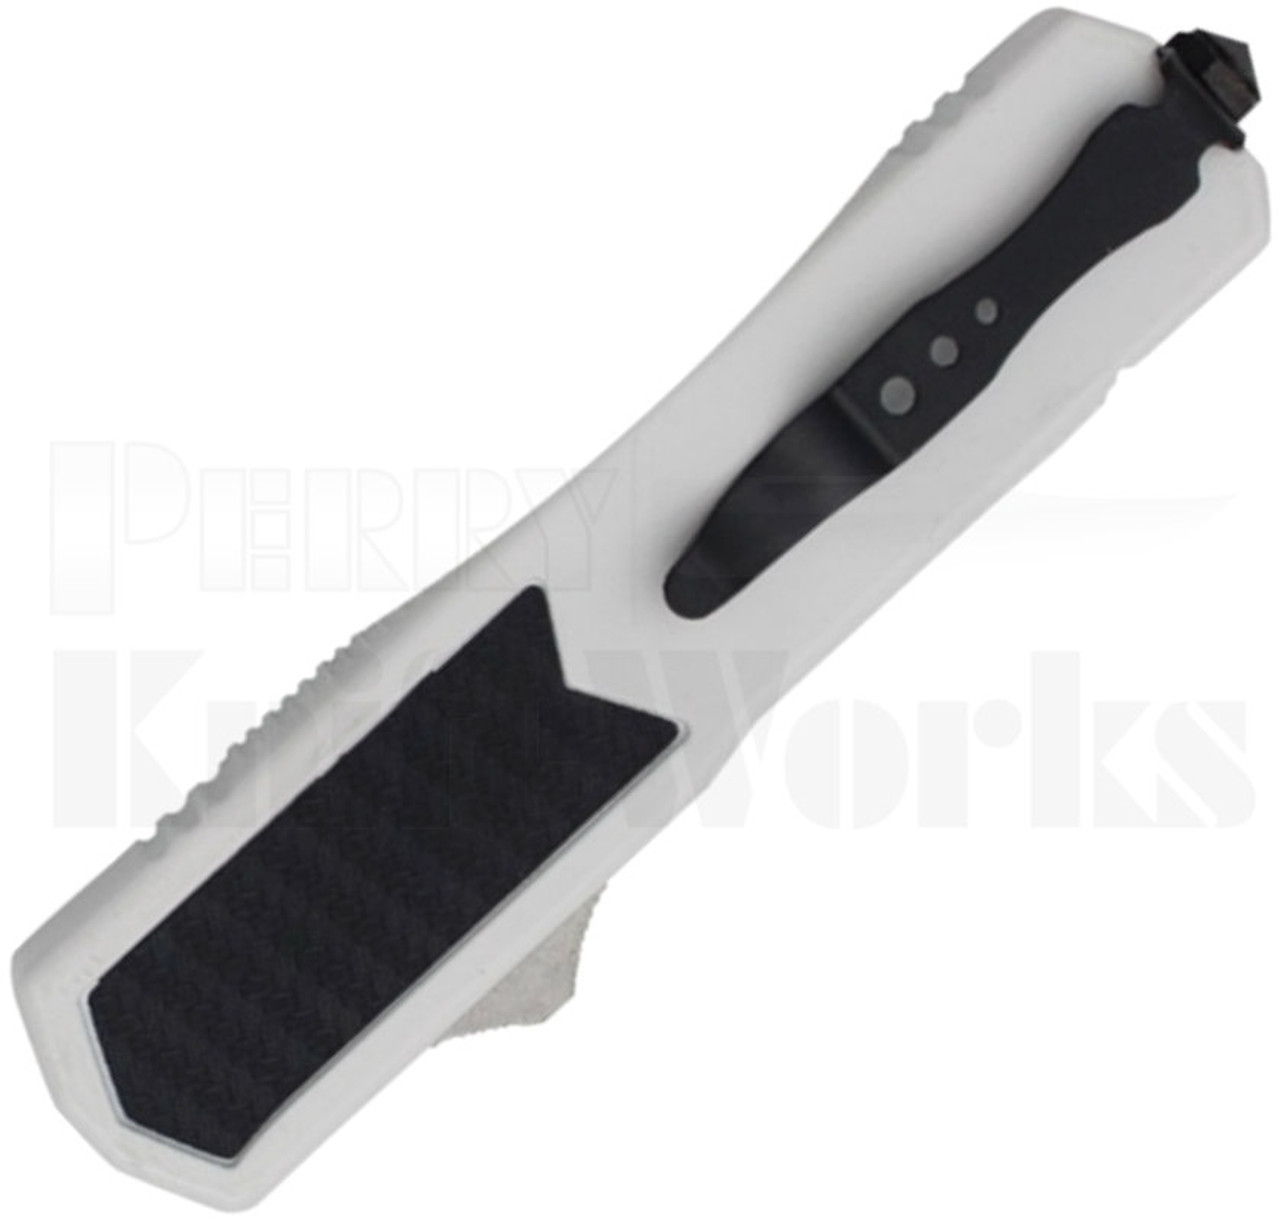 Titan White D/A OTF Automatic Knife Carbon Fiber  l For Sale